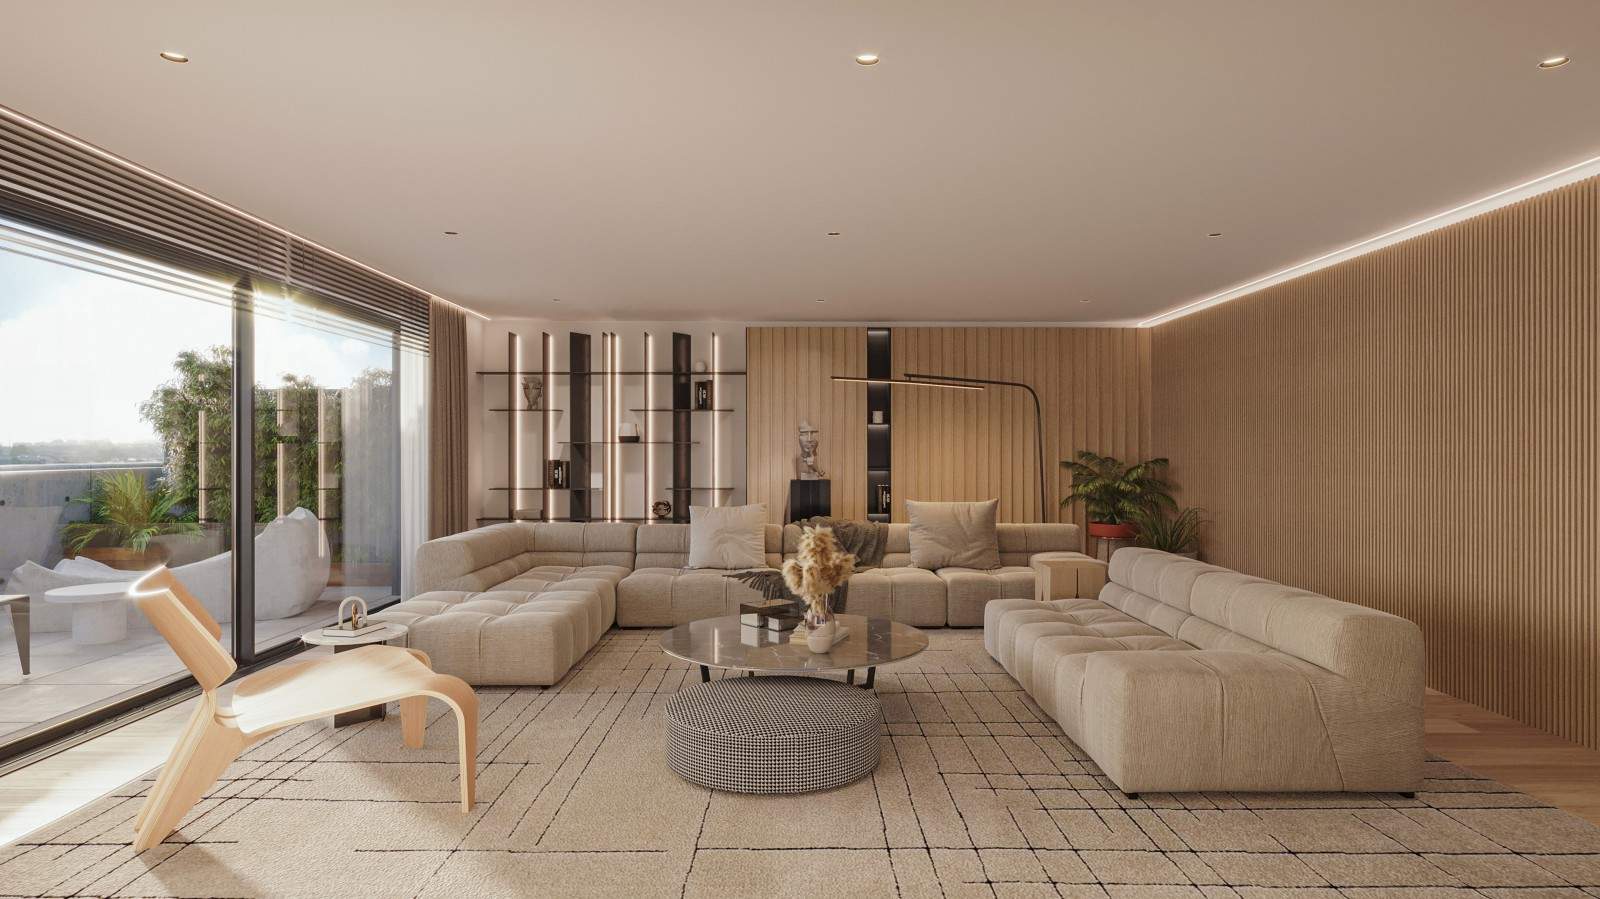 Neues Penthouse-Duplex mit Balkon, zu verkaufen, in Leça da Palmeira, Porto, Portugal_207253